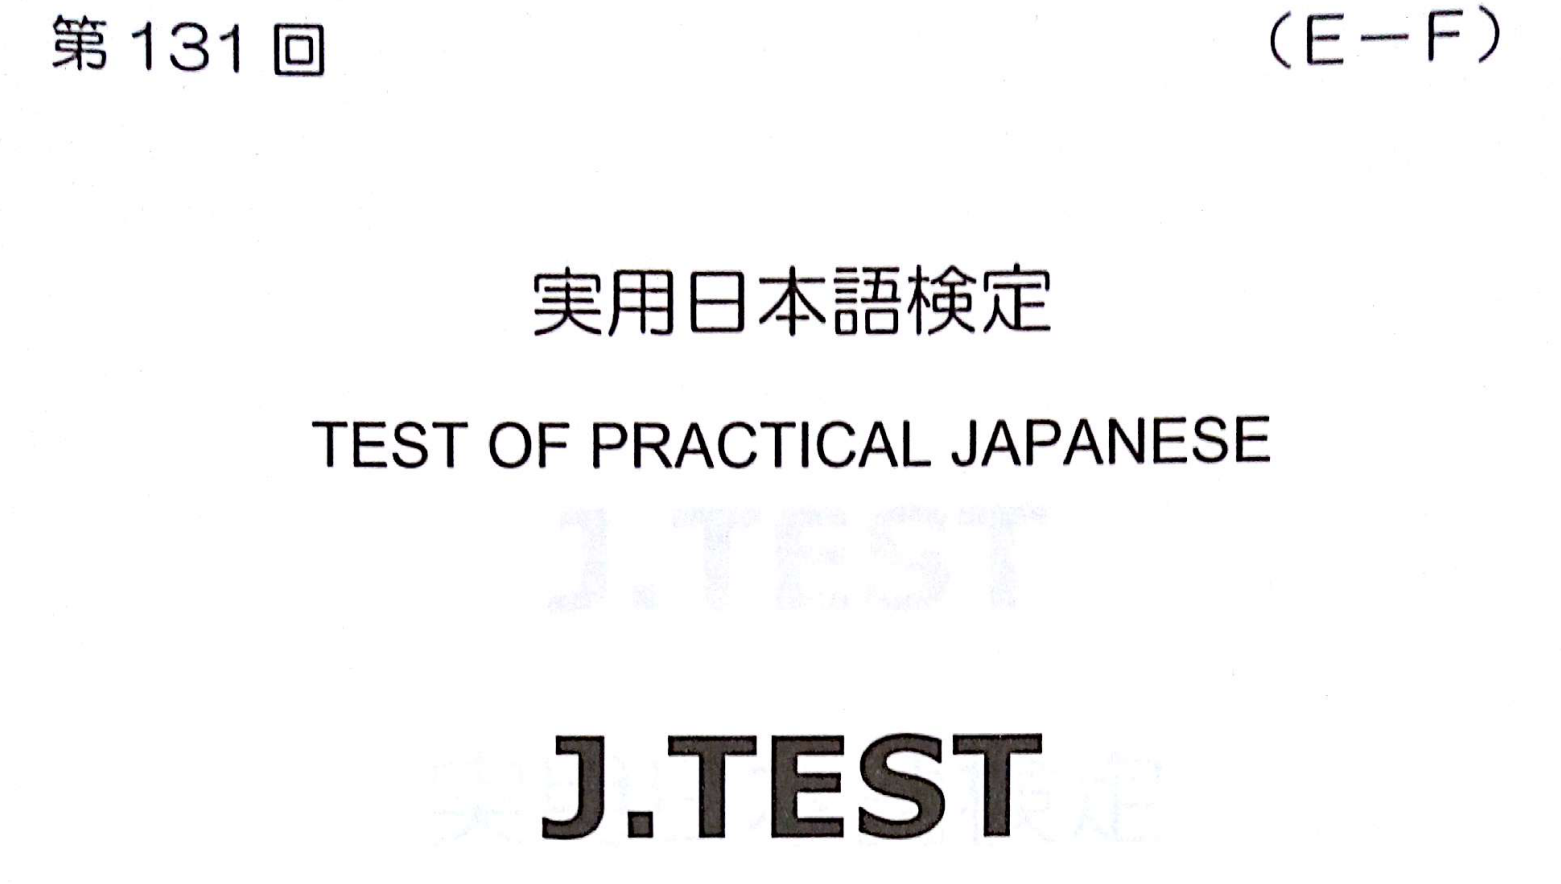 2017年 J.TEST 实用日本语检定（E-F级）   第131回考试